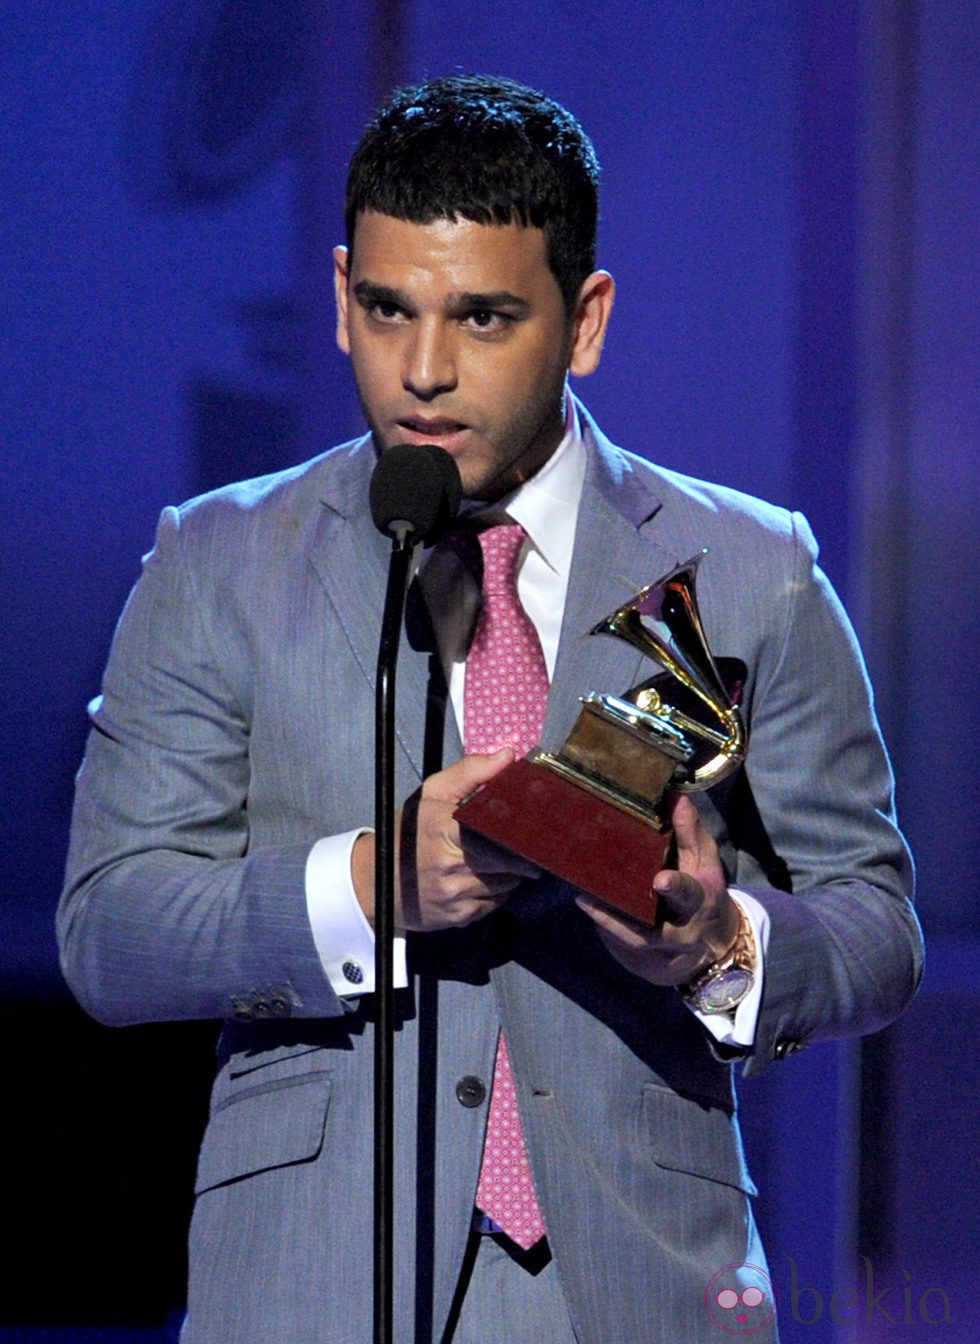 Tito el Bambino recoge su premio Grammy Latino 2011